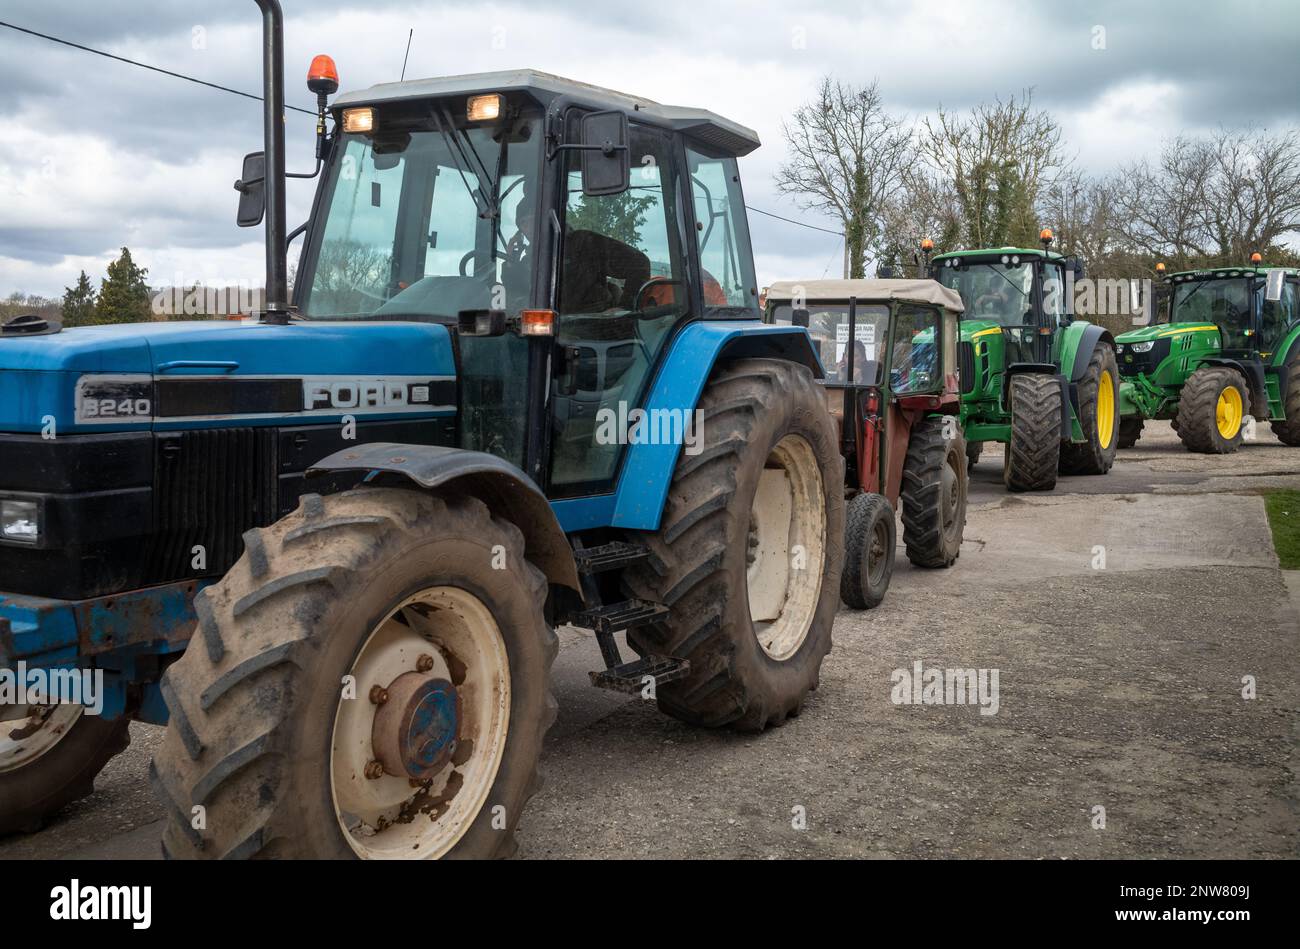 Eine Reihe von Oldtimer- und Traktoren wartet darauf, bei einer Traktor-Rallye in Wisborough Green, West Sussex, Großbritannien, loszulegen. Stockfoto